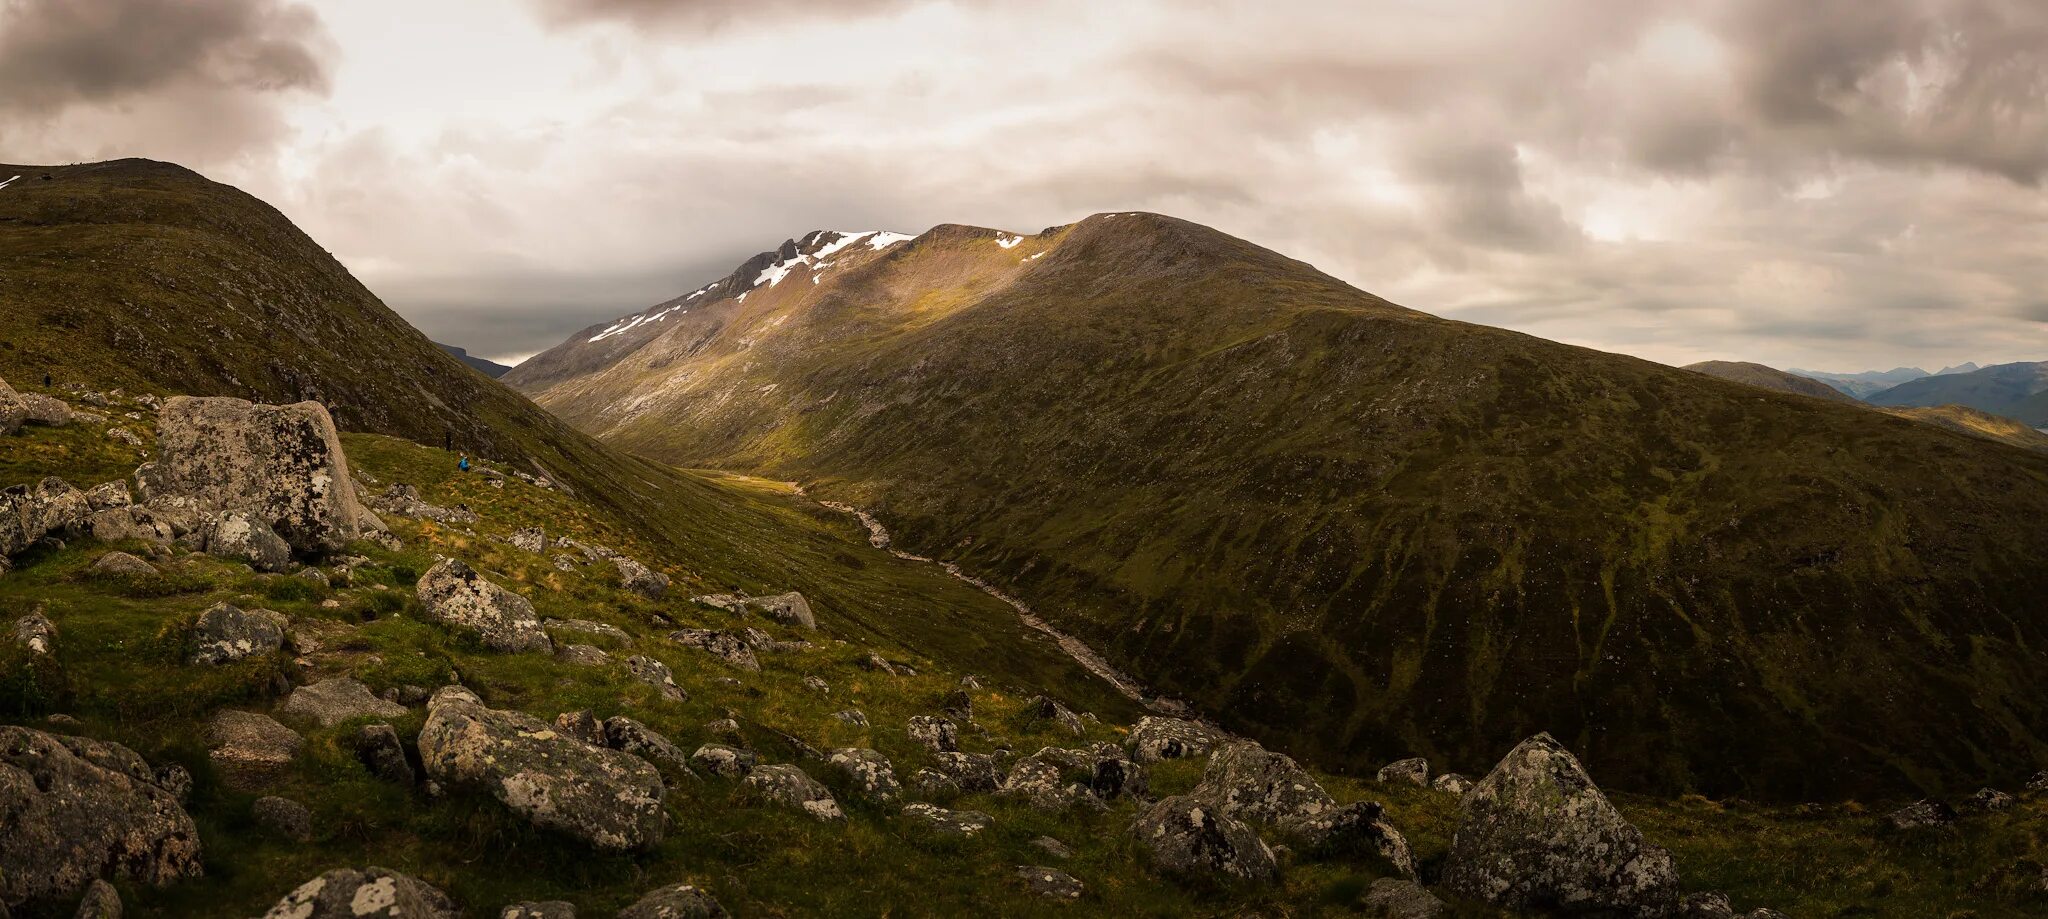 Гора Бен Невис в Шотландии. Бен-Невис грампианские горы. Самая высокая гора Великобритании Бен Невис. Грампианские горы Шотландия.